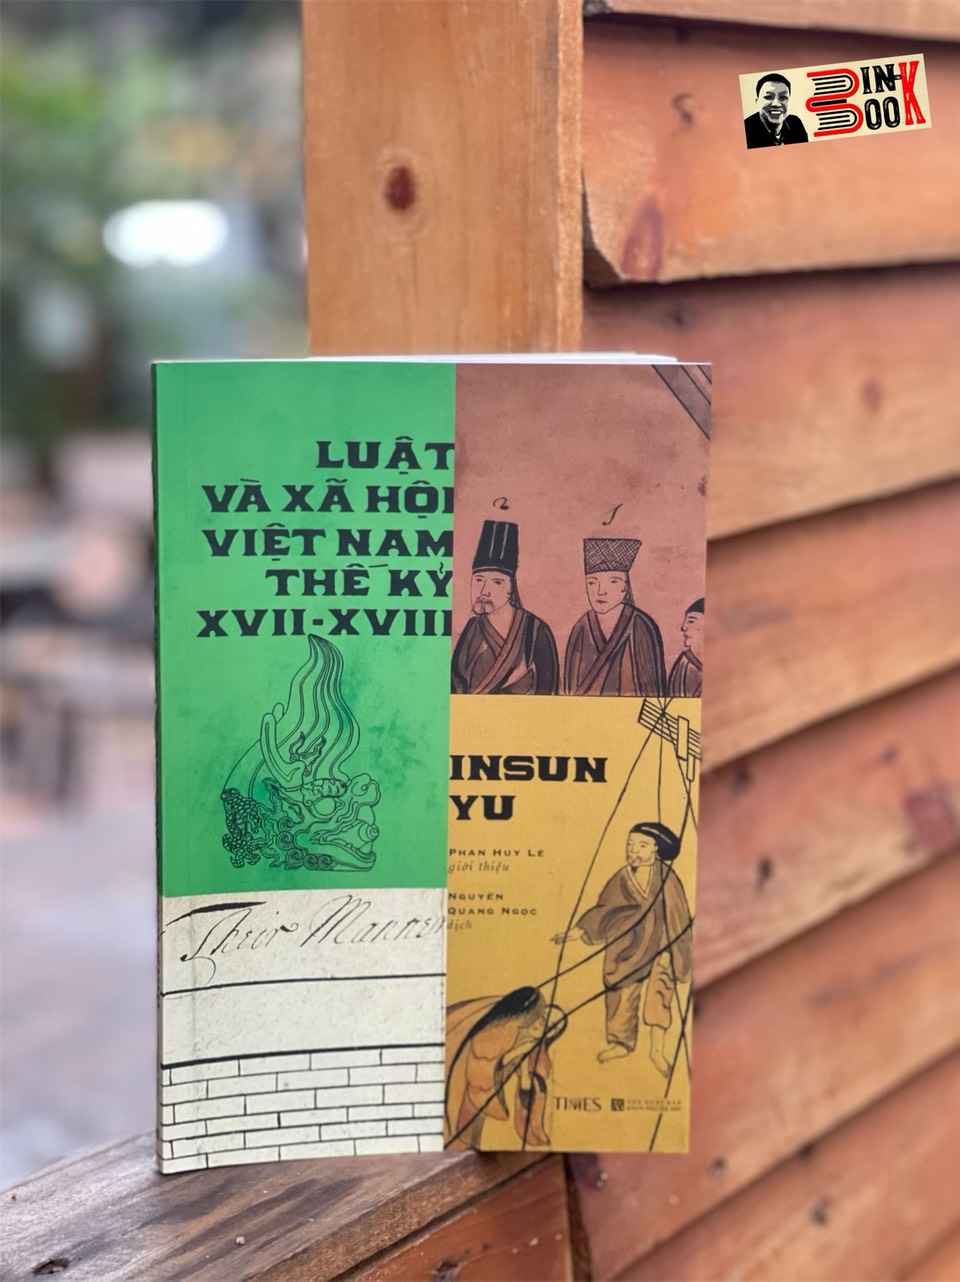 LUẬT VÀ XÃ HỘI VIỆT NAM THẾ KỶ XVII – XVIII– Insun Yu – Nguyễn Quang Ngọc dịch – Times Book